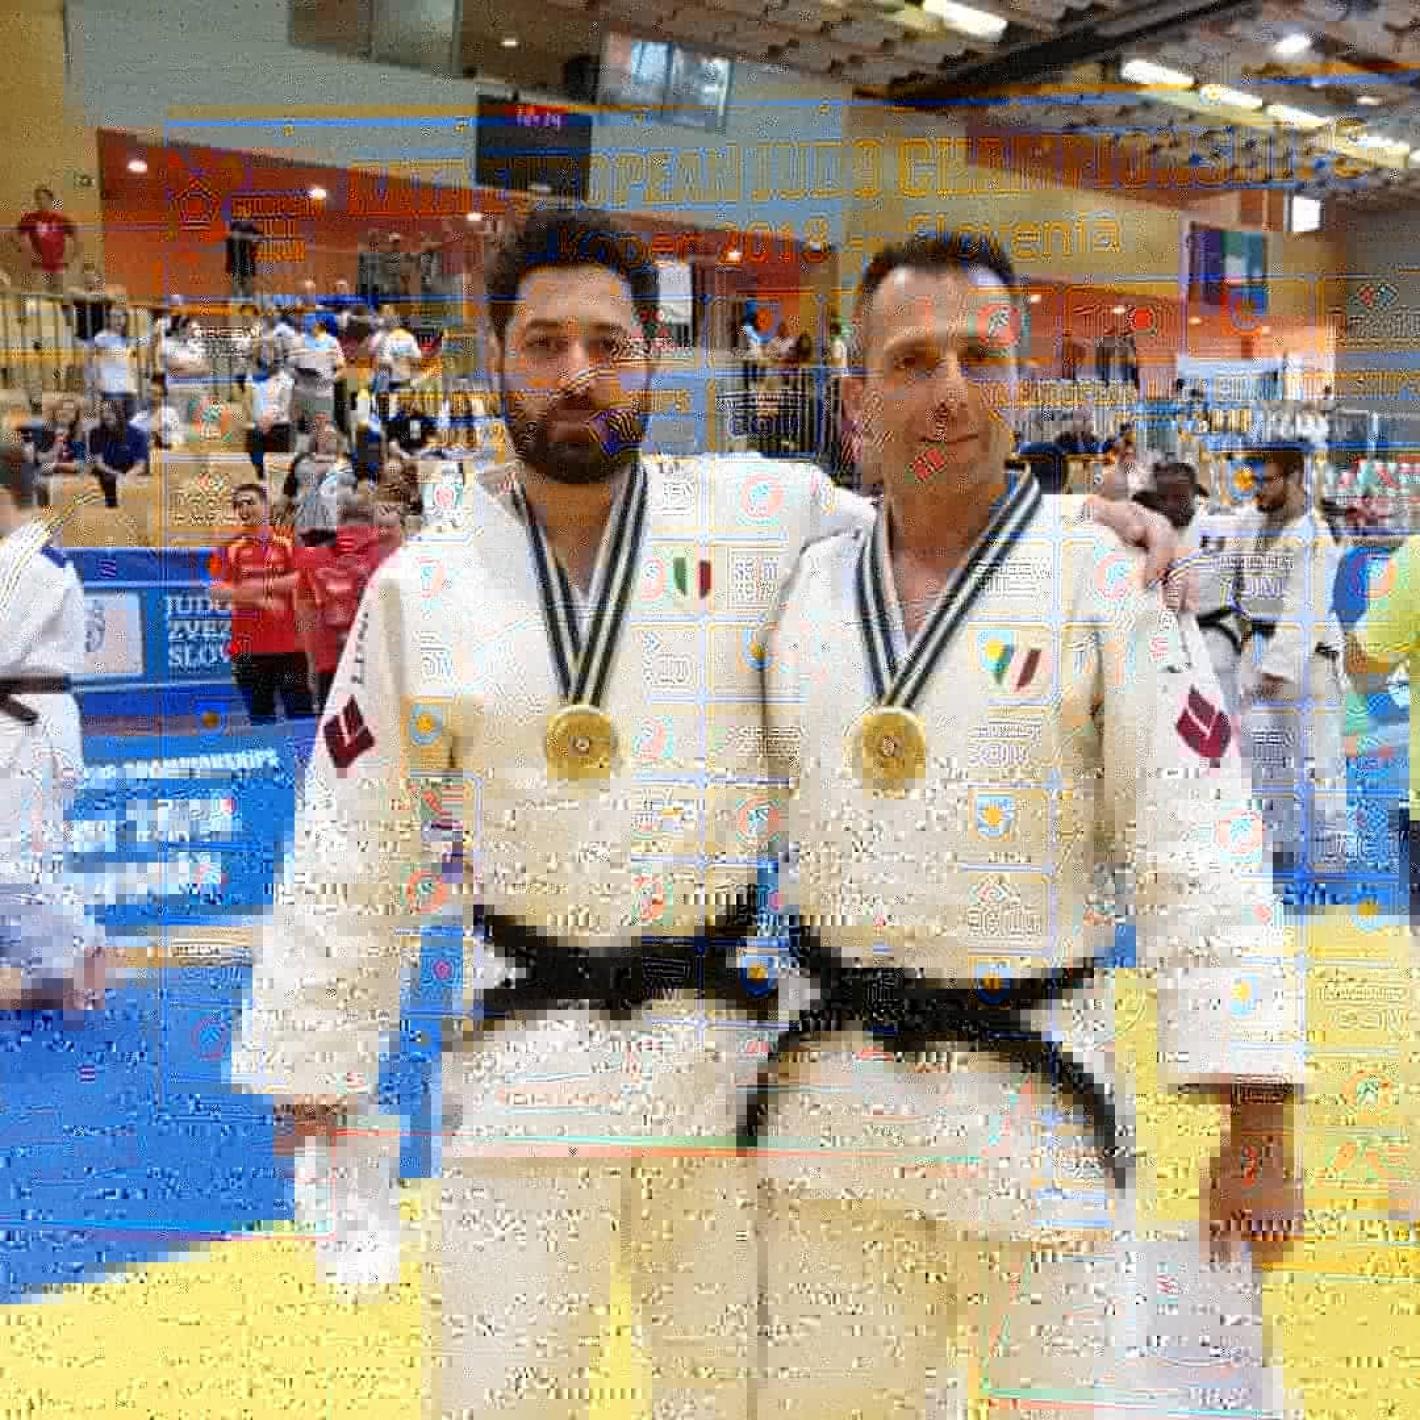 images/umbria/medium/Proietti-Varazzi-Judo_europei_2.jpg